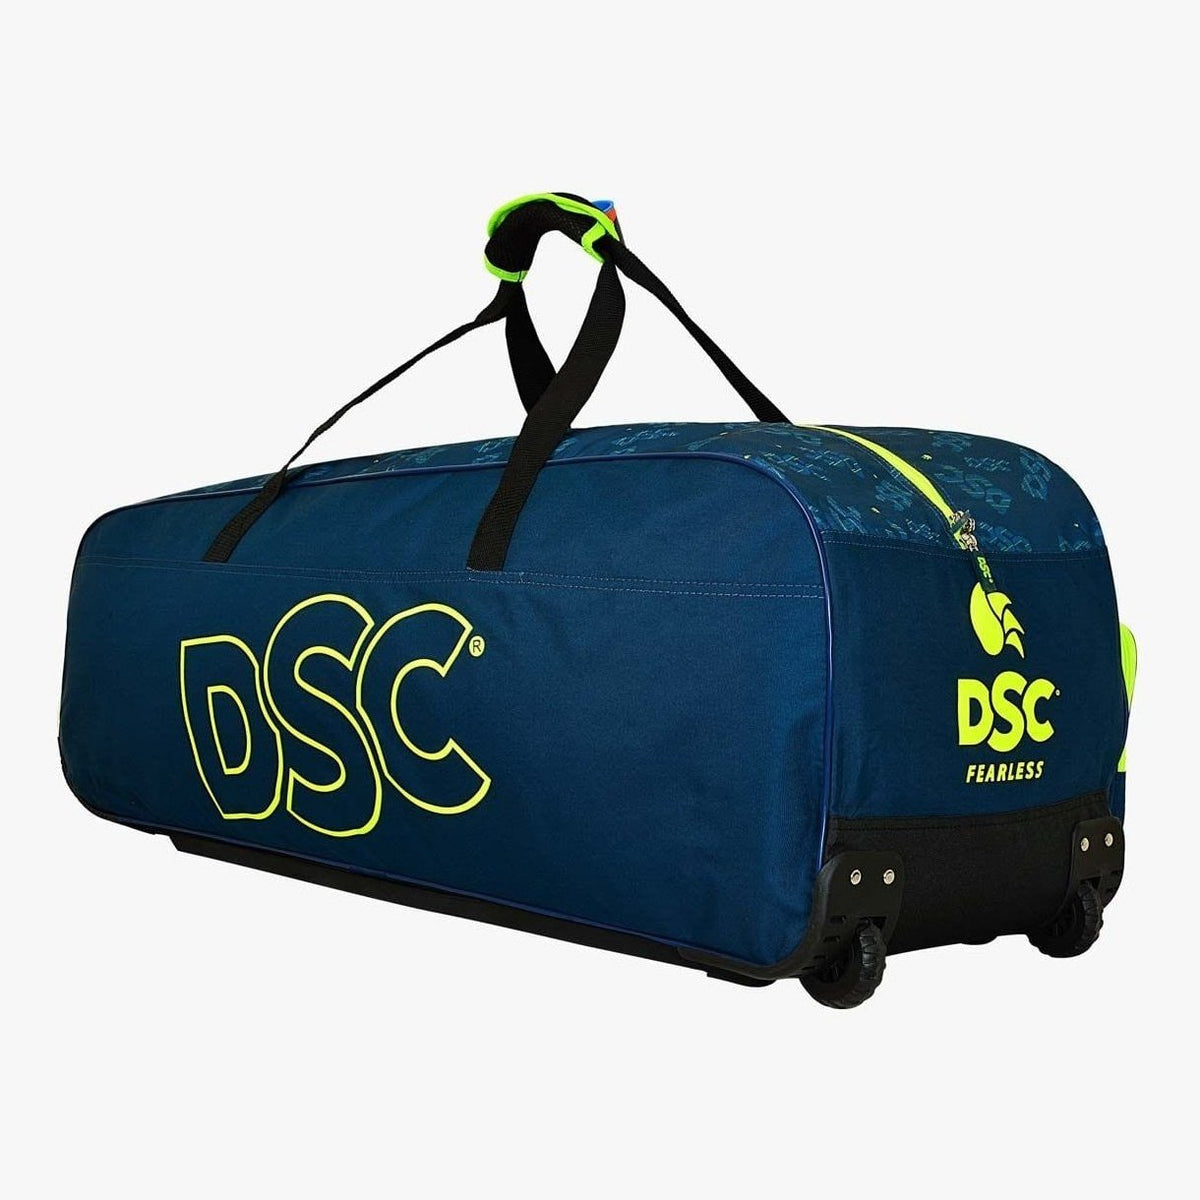 Adidas Cricket Bags DSC Condor Flite Wheels Cricket Bag